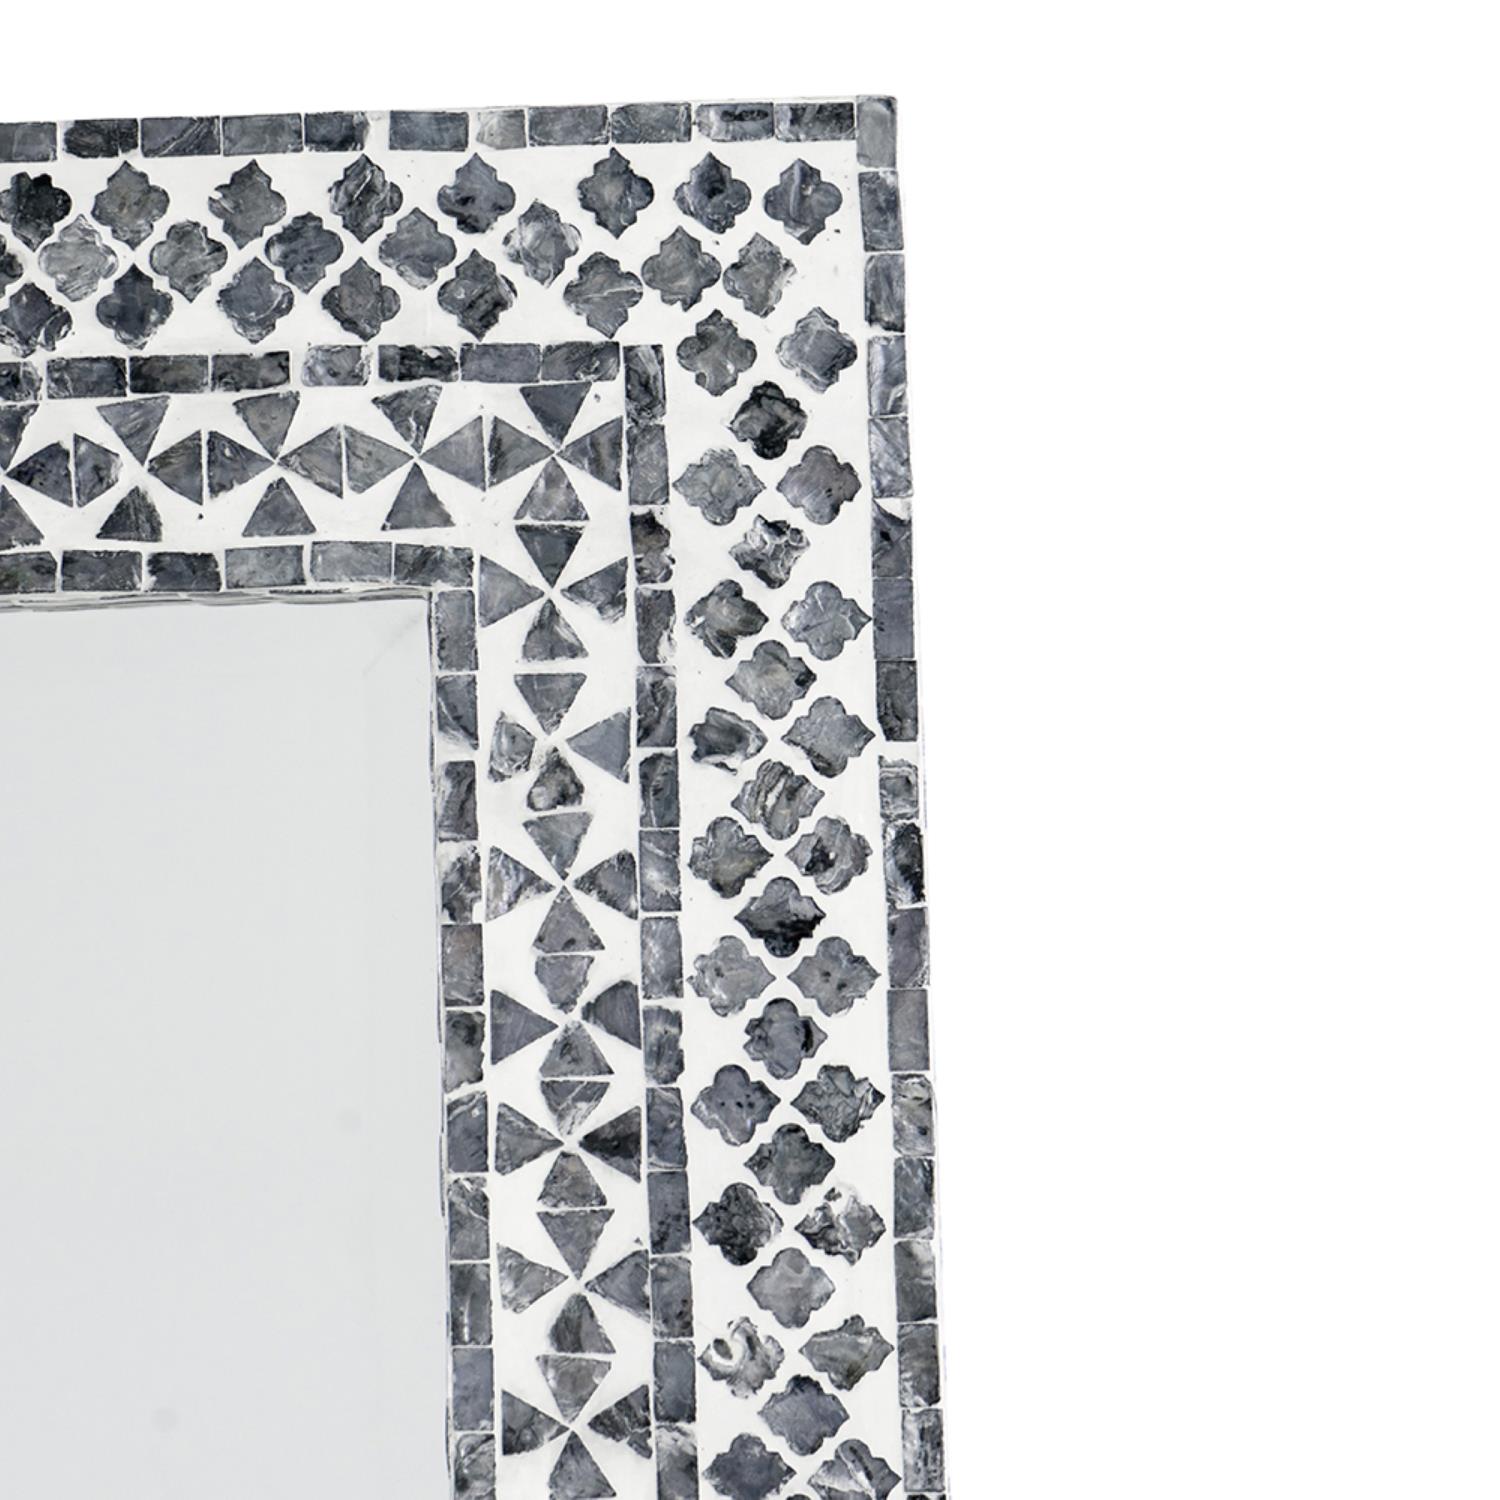 AB Home A&B Home Contemporary Rectangular Capiz Framed Mirror With Black&White 48758